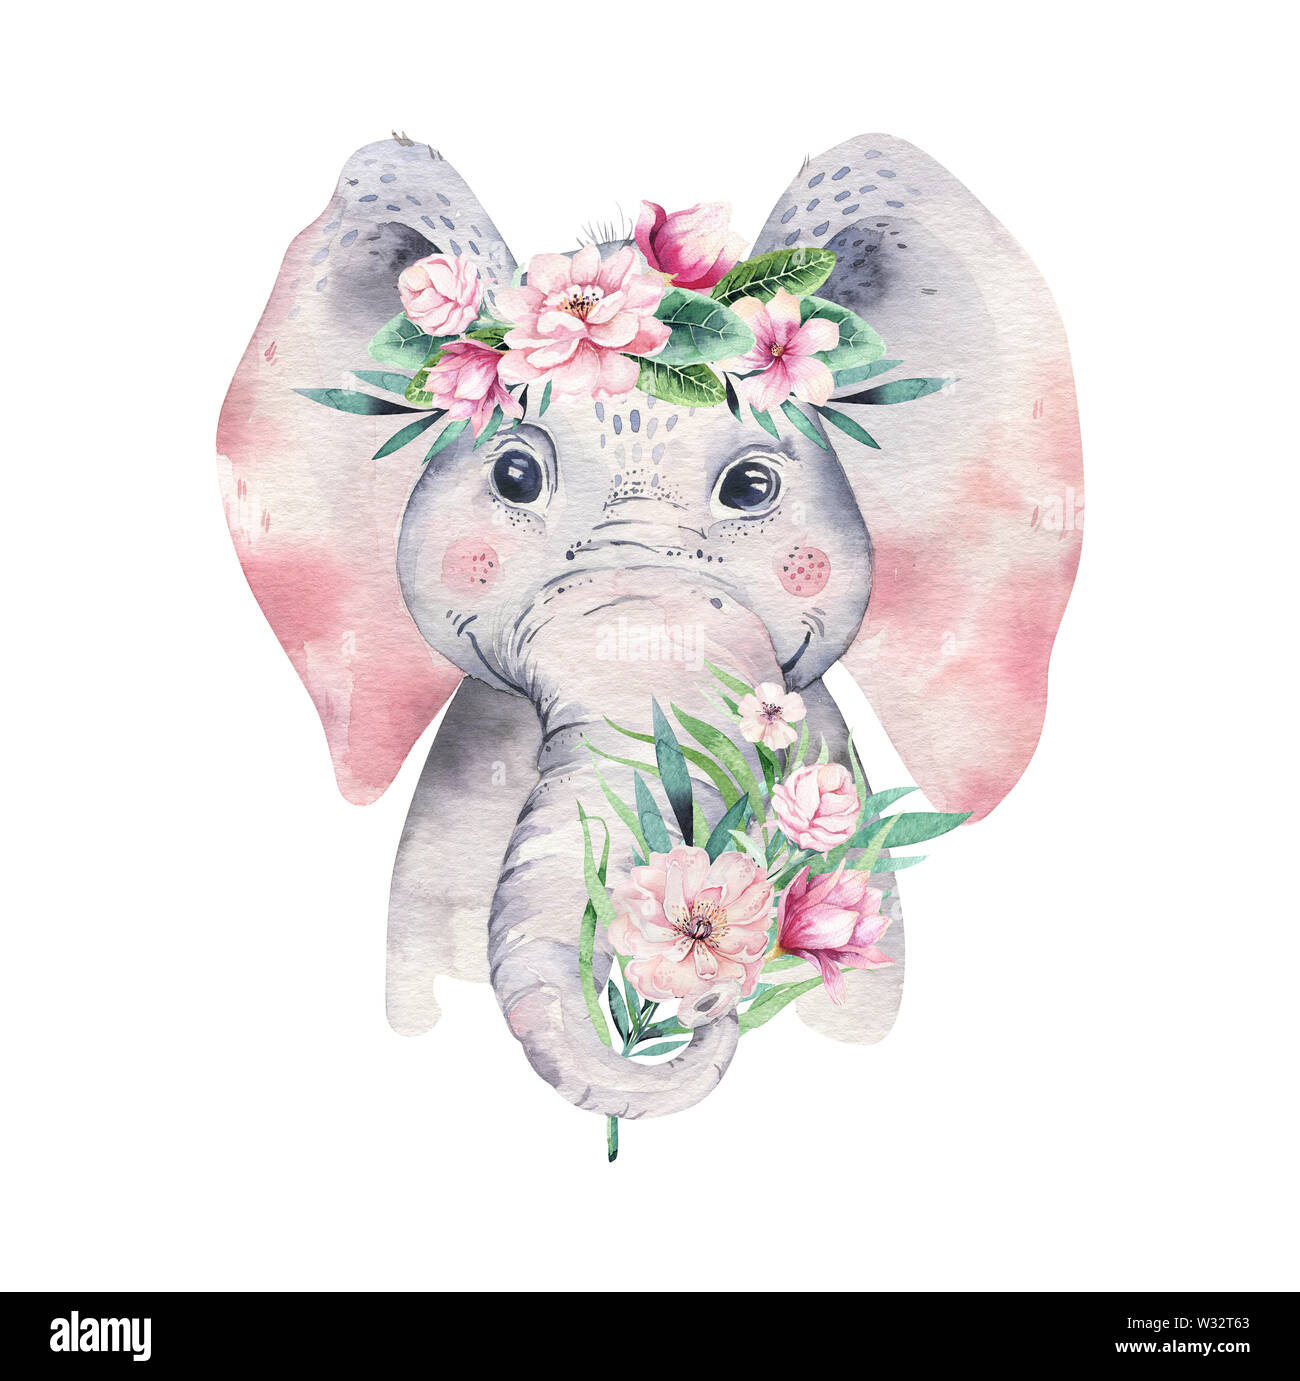 Ein Plakat mit einem Baby Elefant. Aquarell cartoon Elefant tropische Tier  Abbildung. Dschungel exotisch Sommer design Stockfotografie - Alamy